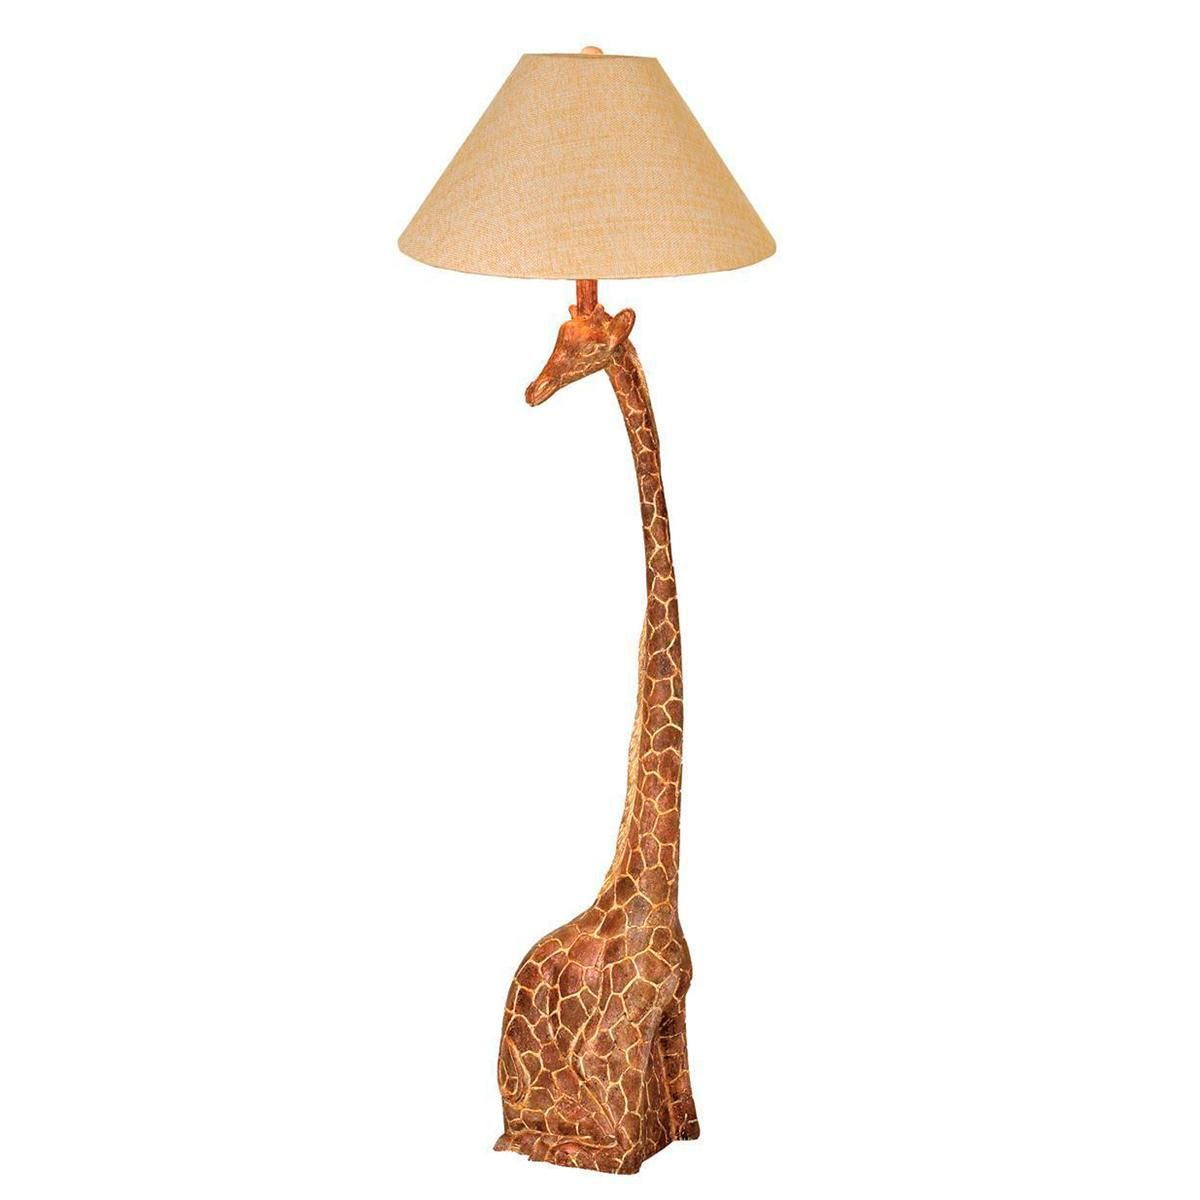 Giraffe Floor Lamp Bedroom Lamps Cool Floor Lamps Room Lamp regarding sizing 1200 X 1200